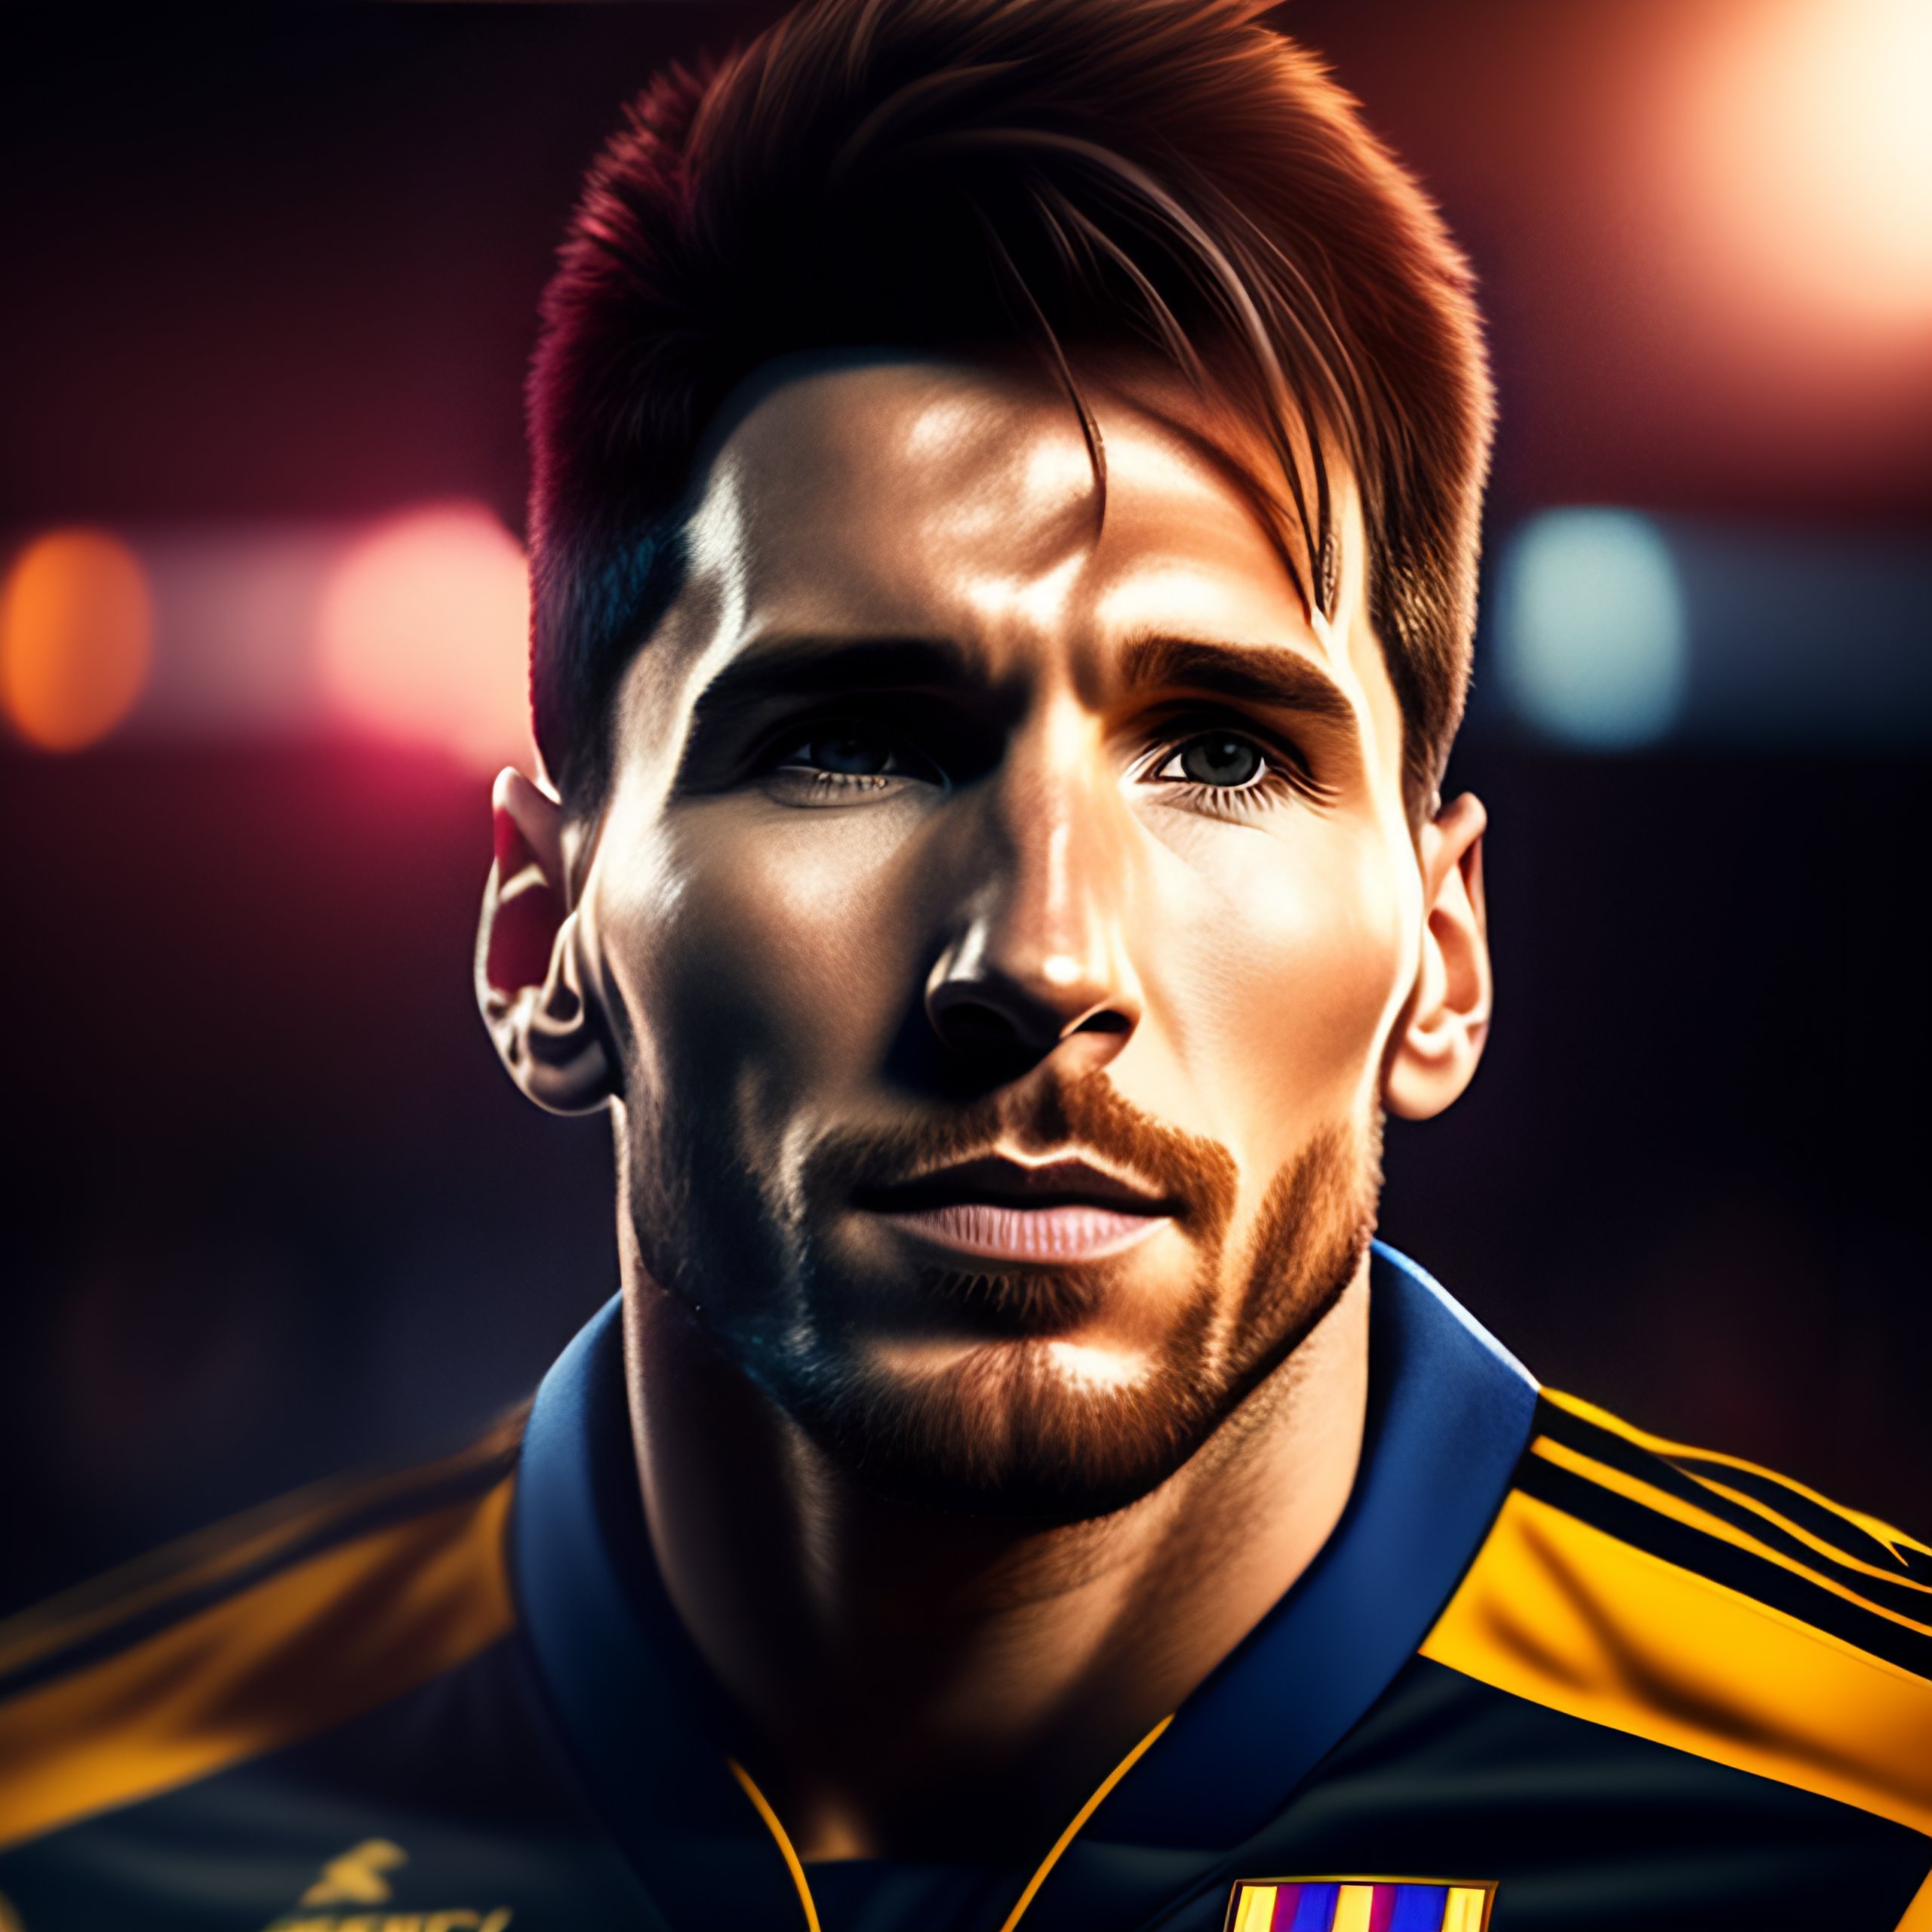 Hình nền Messi - Siêu sao bóng đá vẫn luôn là đề tài yêu thích của các fan trên toàn thế giới. Và hãy lấy ngay hình nền Messi độc đáo để khiến cho màn hình điện thoại của bạn càng thêm nổi bật và độc đáo hơn nữa!